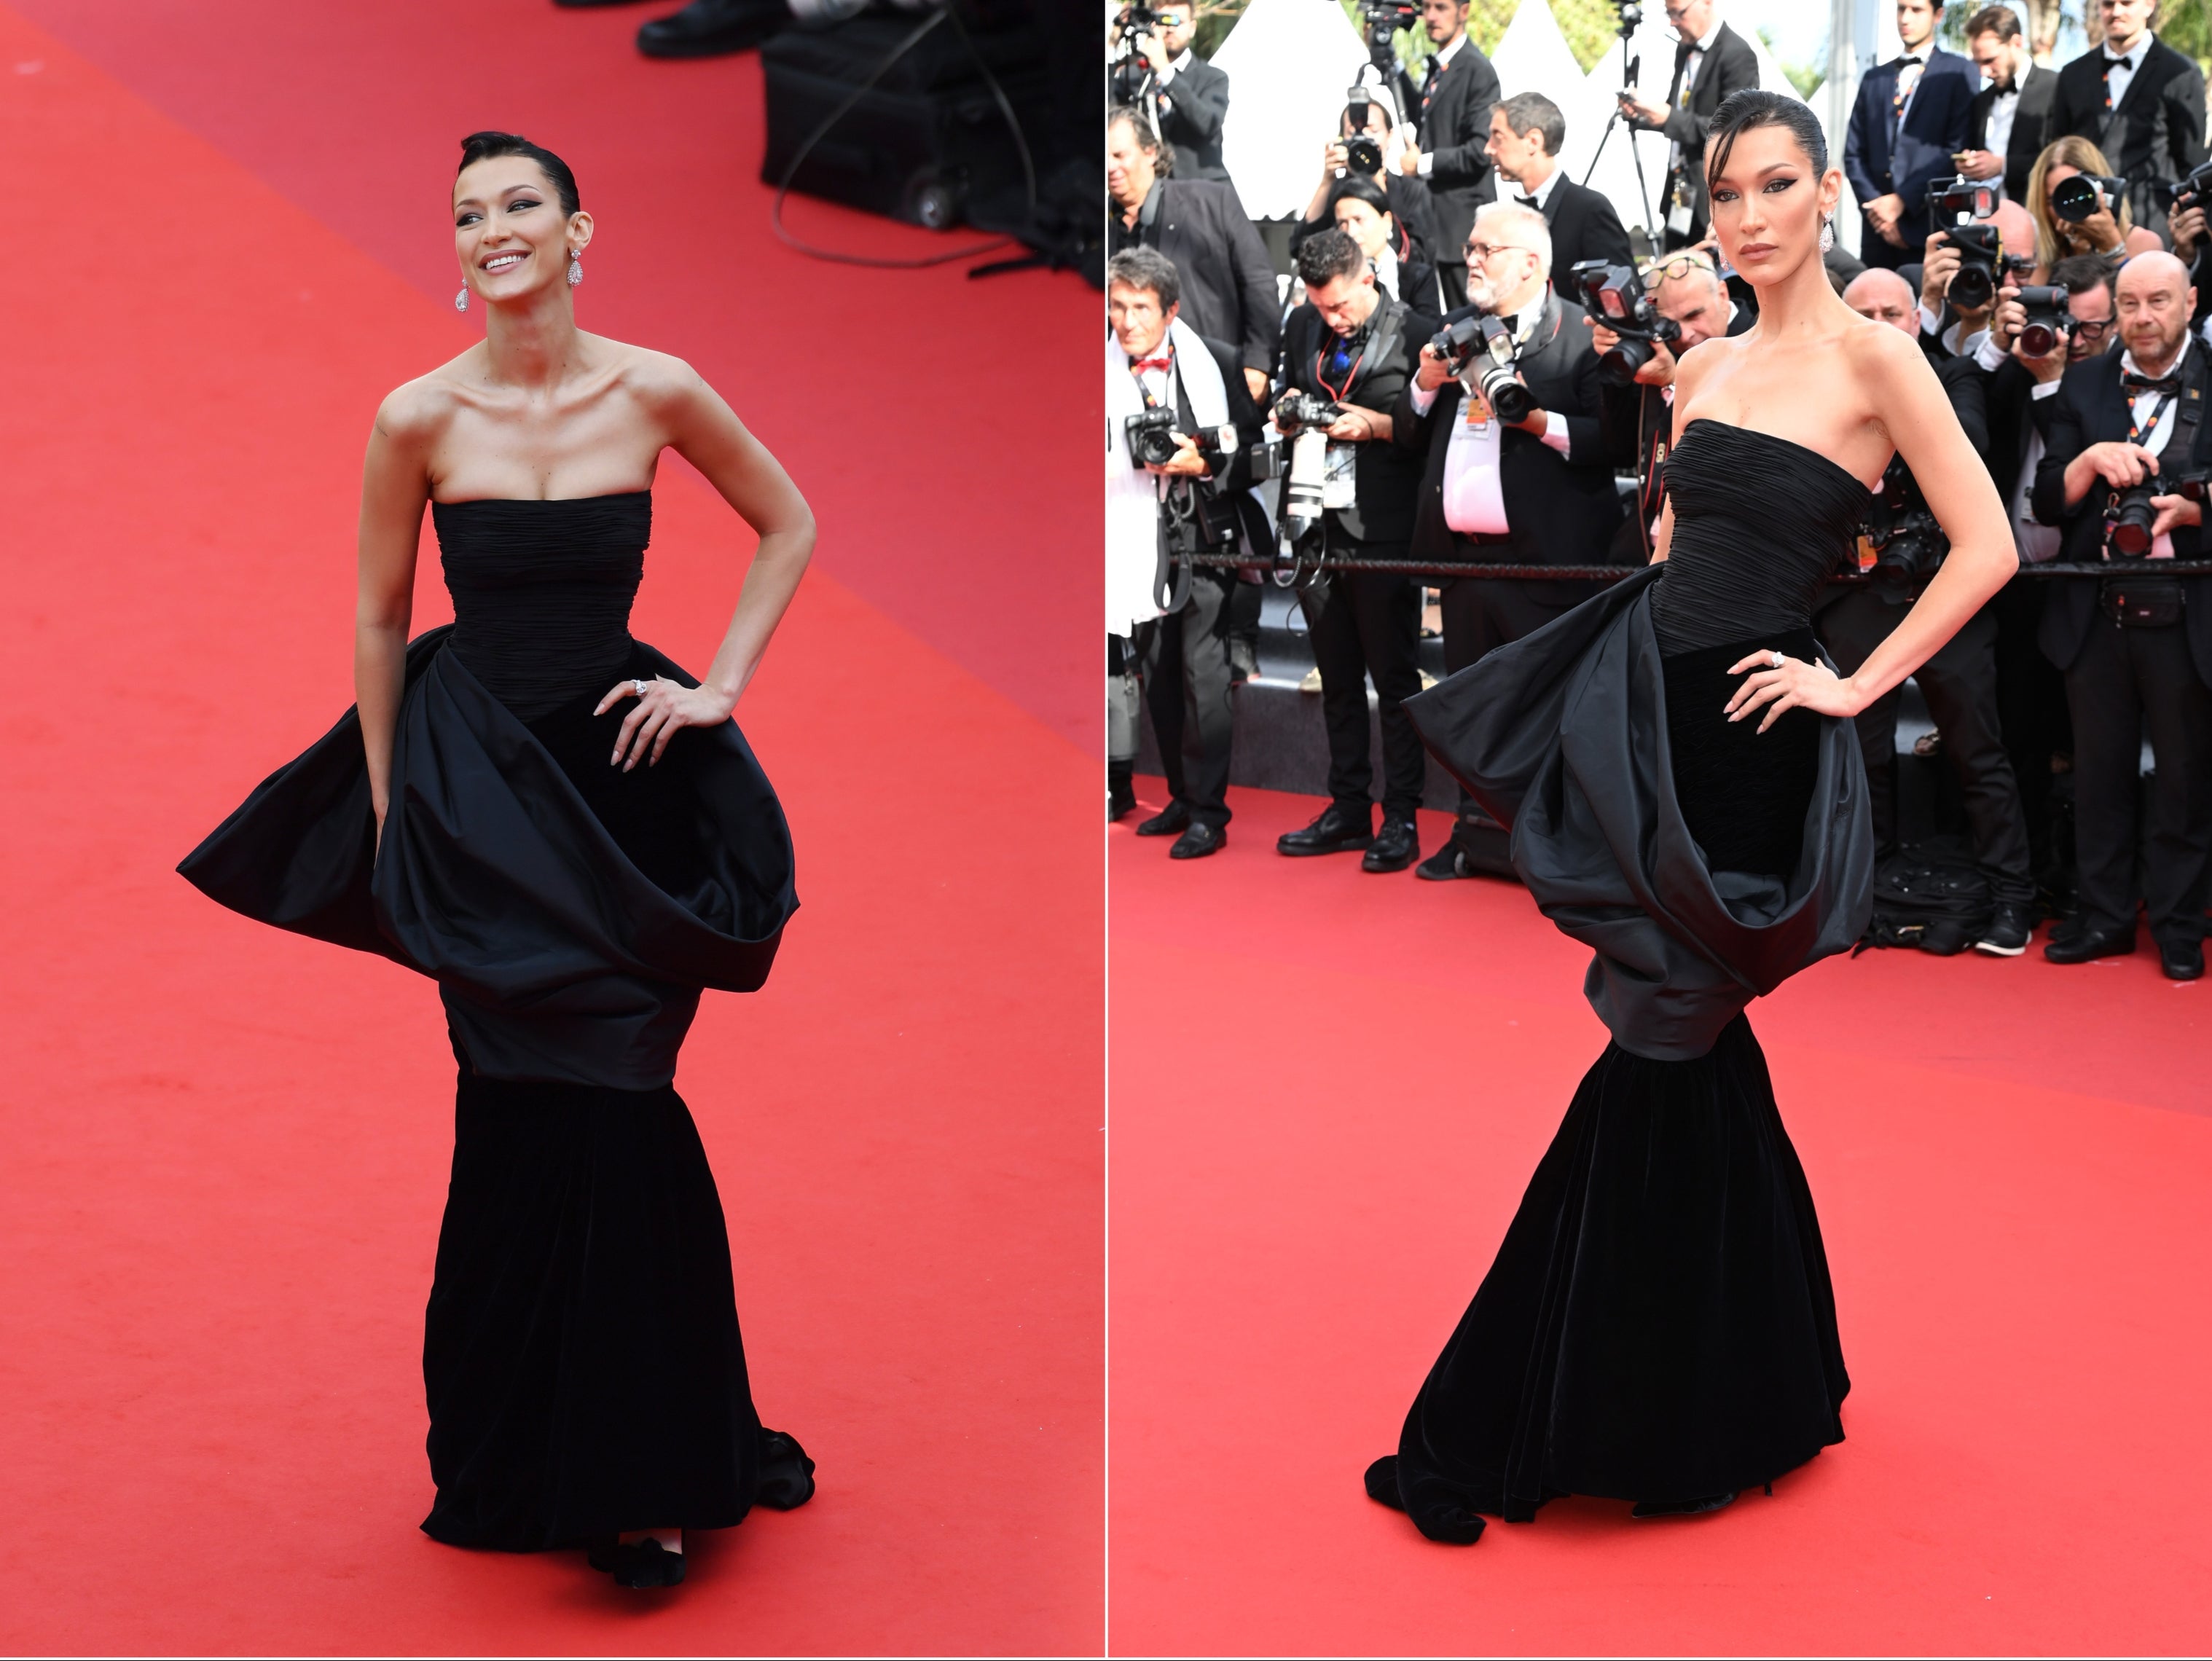 defekt Forhøre Stat Bella Hadid wears vintage Versace on Cannes red carpet | The Independent